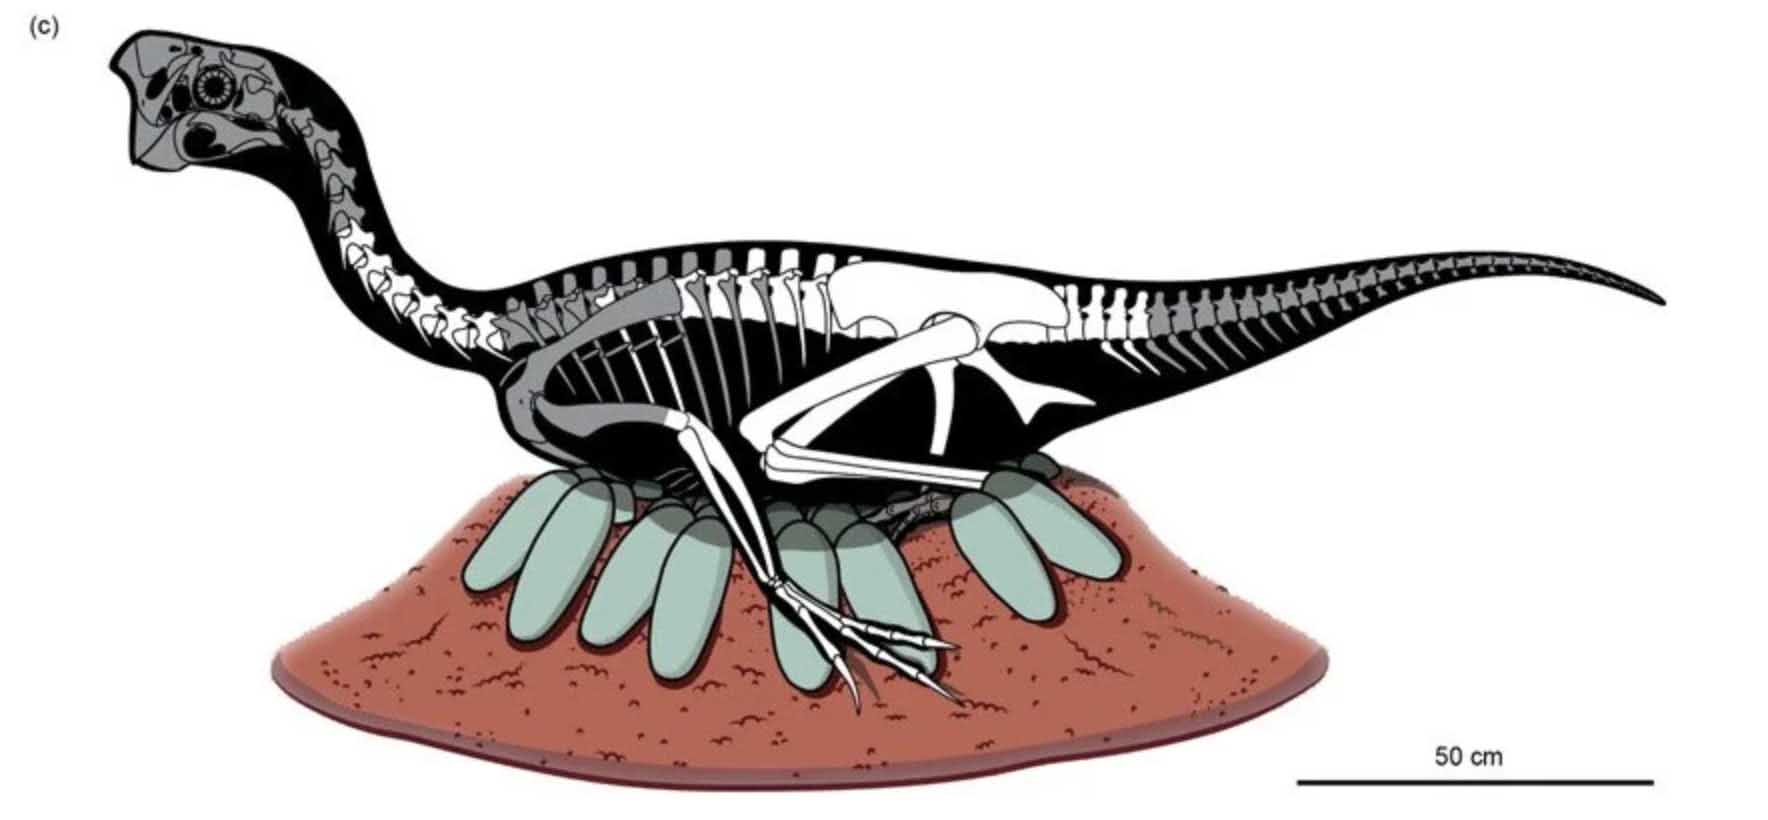 เอ็มบริโอไดโนเสาร์ที่เก็บรักษาไว้อย่างไม่น่าเชื่อที่พบในไข่ฟอสซิล 3